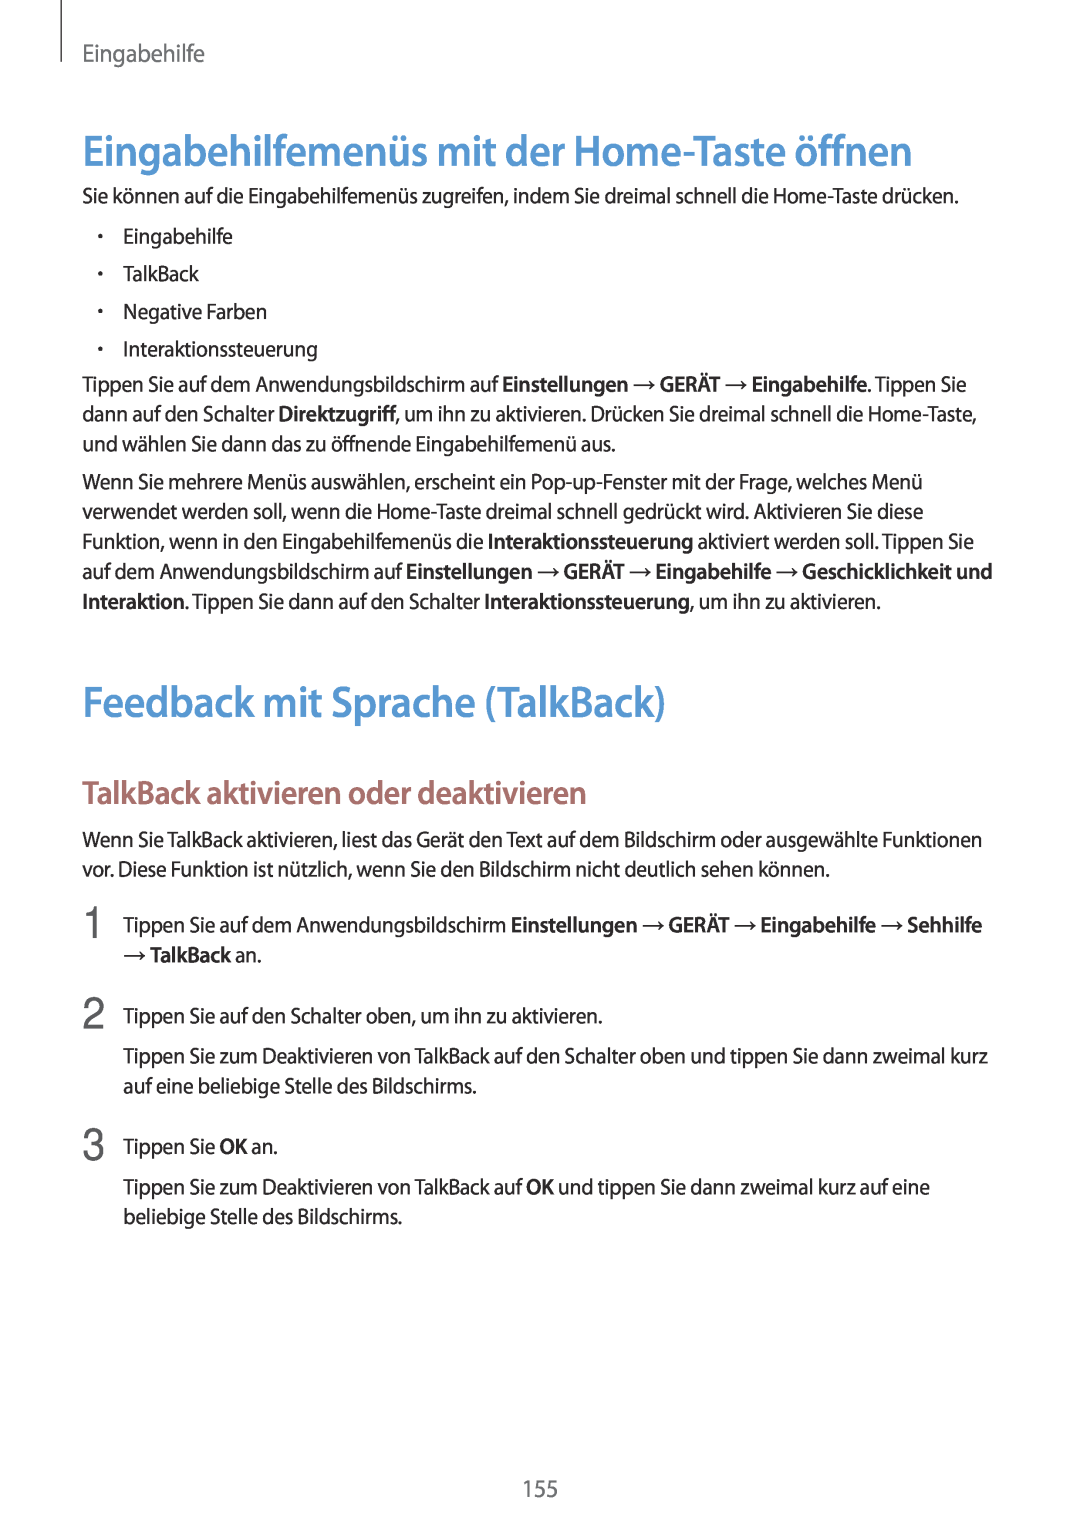 Samsung SM-T800NTSASEB manual Eingabehilfemenüs mit der Home-Taste öffnen, Feedback mit Sprache TalkBack, → TalkBack an 